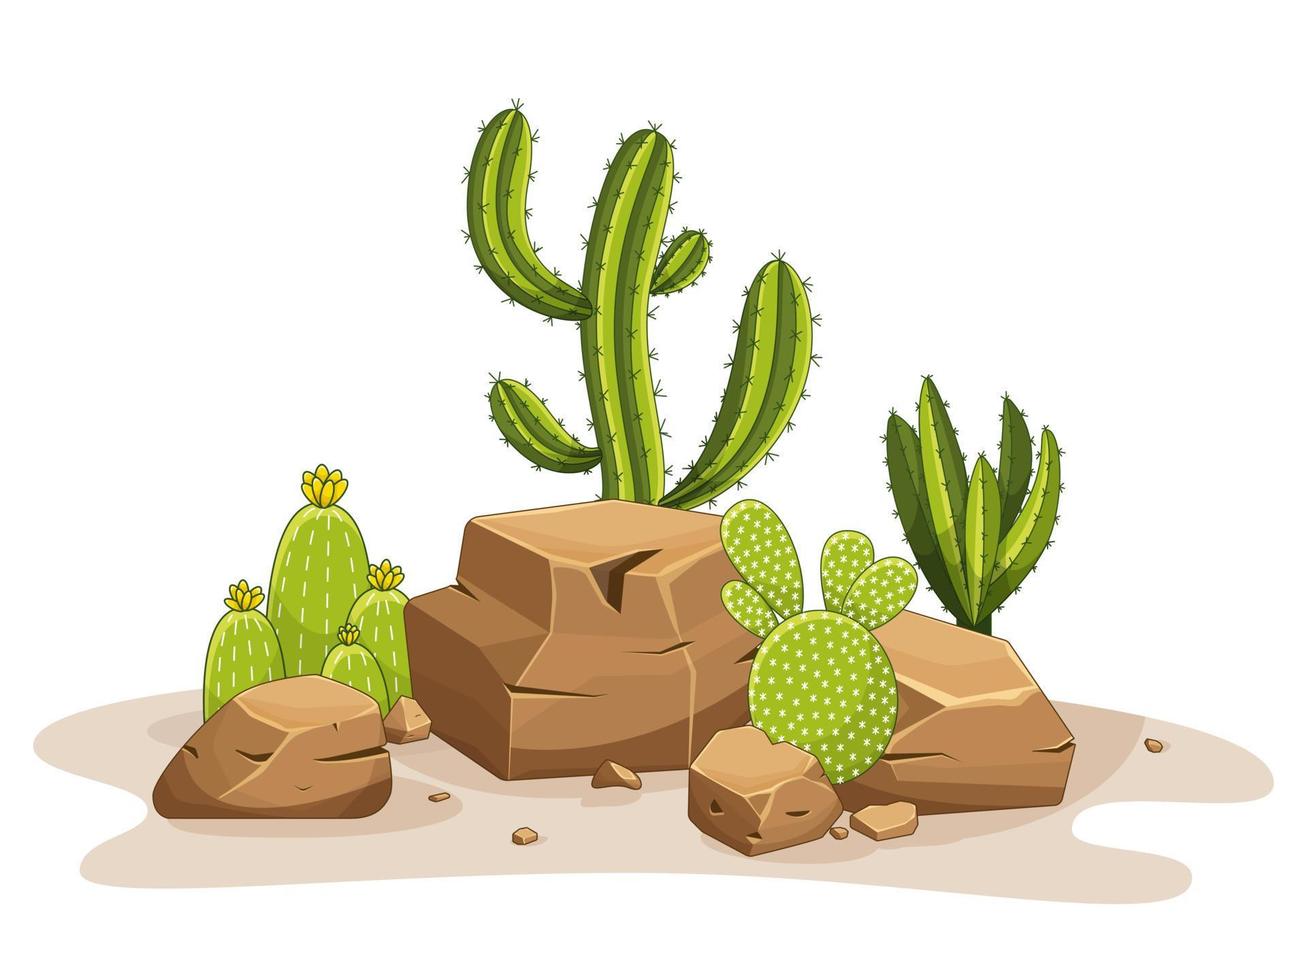 cactus con espinas y piedras. planta verde mexicana con espinas y rocas. elemento del paisaje del desierto y del sur. ilustración vectorial plana de dibujos animados. aislado sobre fondo blanco vector